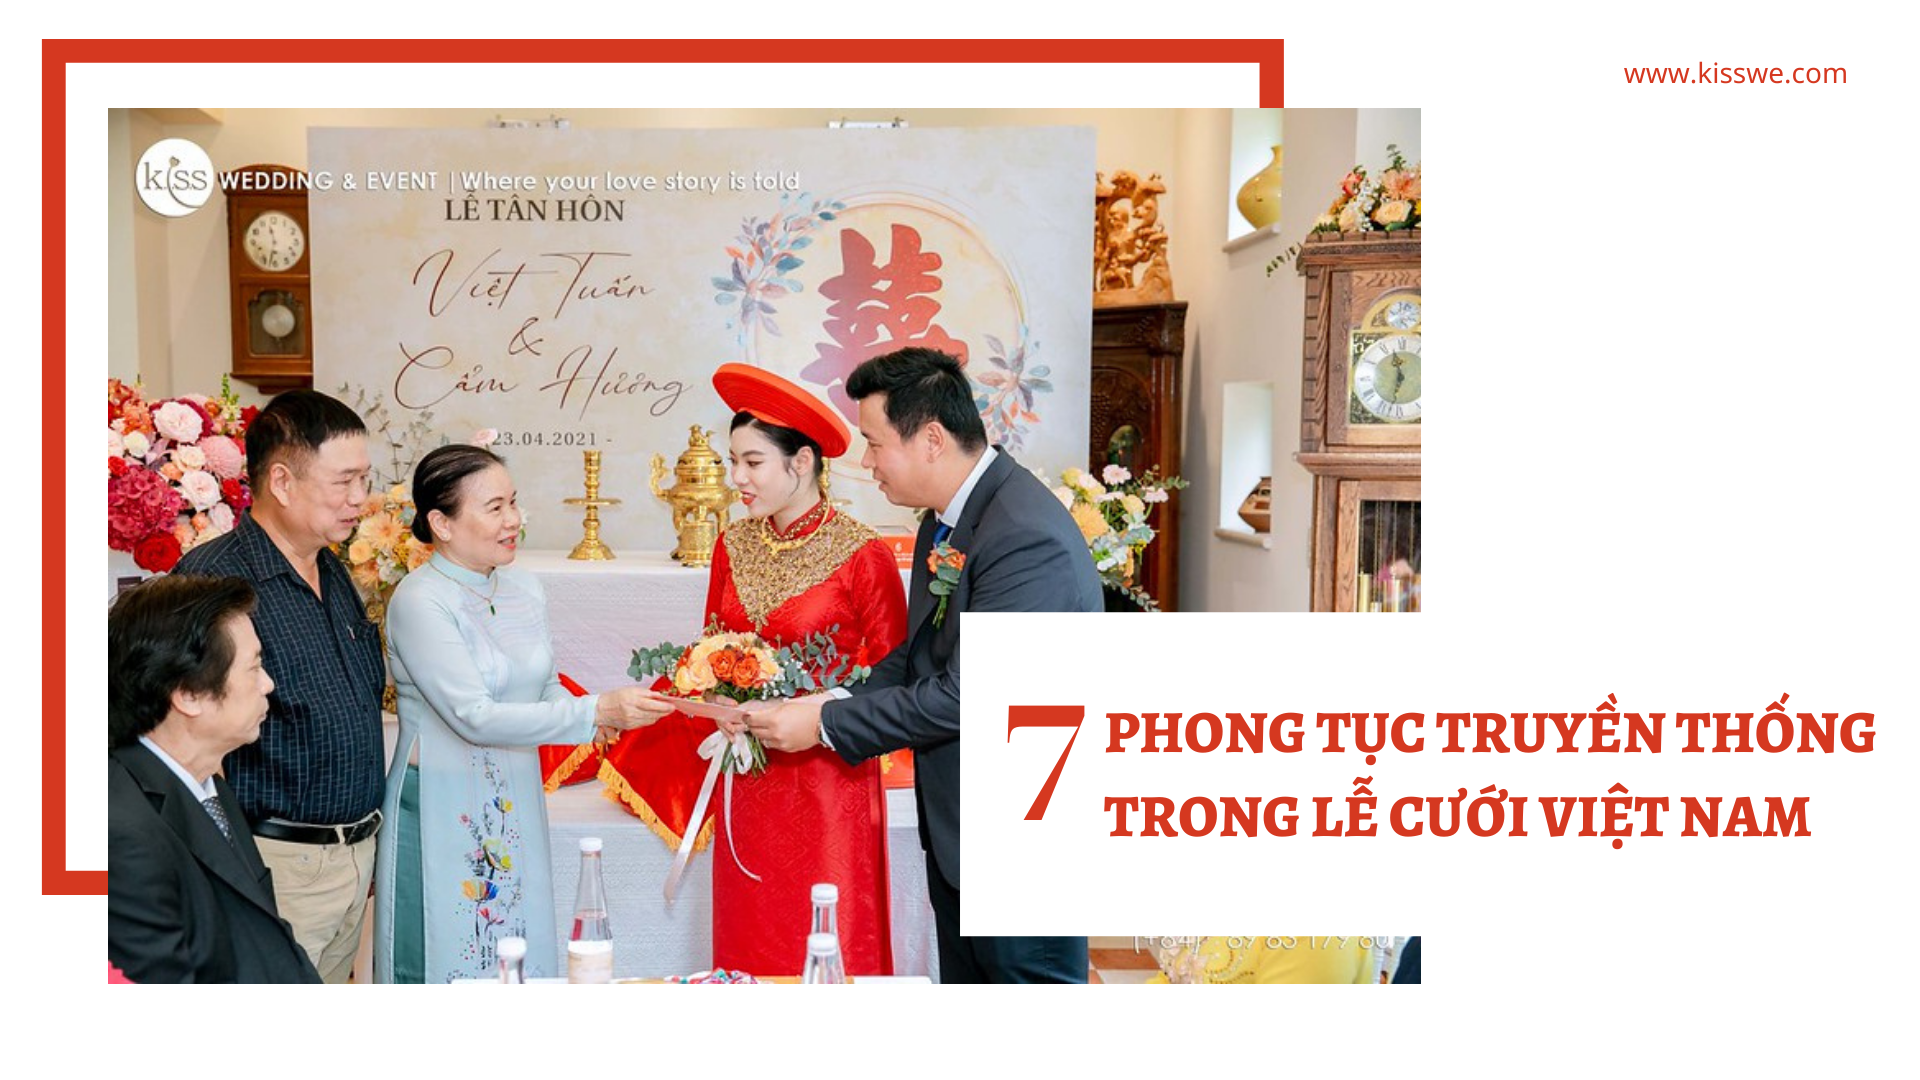 7 phong tục truyền thống trong lễ cưới Việt Nam - KISSWE